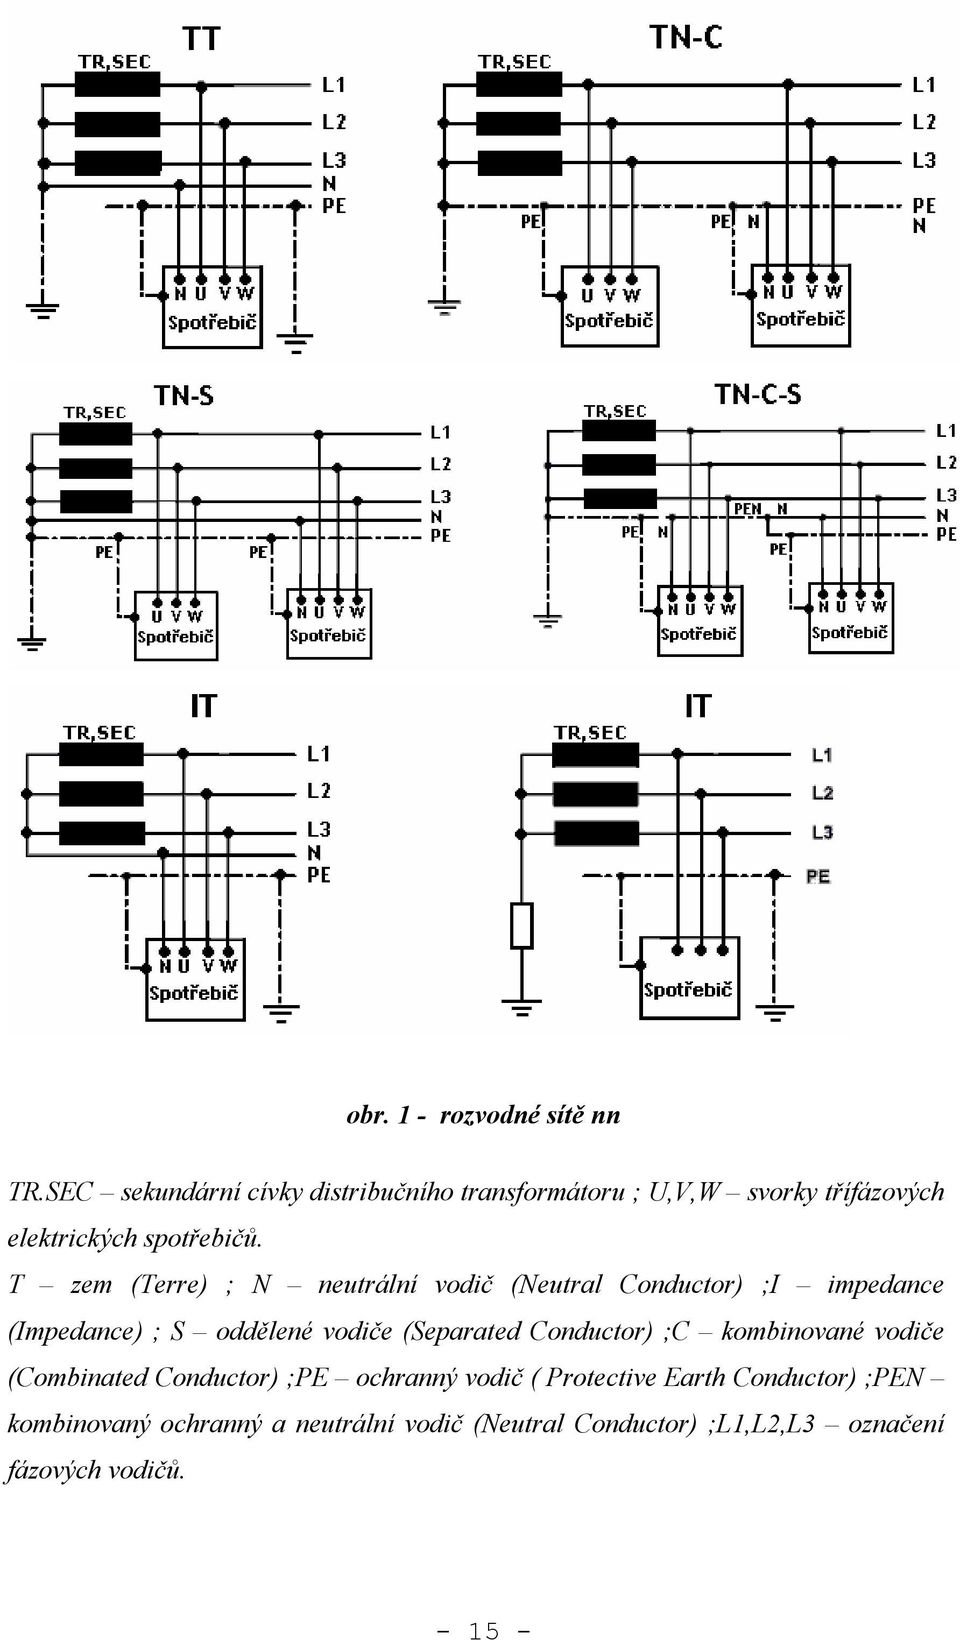 T zem (Terre) ; N neutrální vodič (Neutral Conductor) ;I impedance (Impedance) ; S oddělené vodiče (Separated